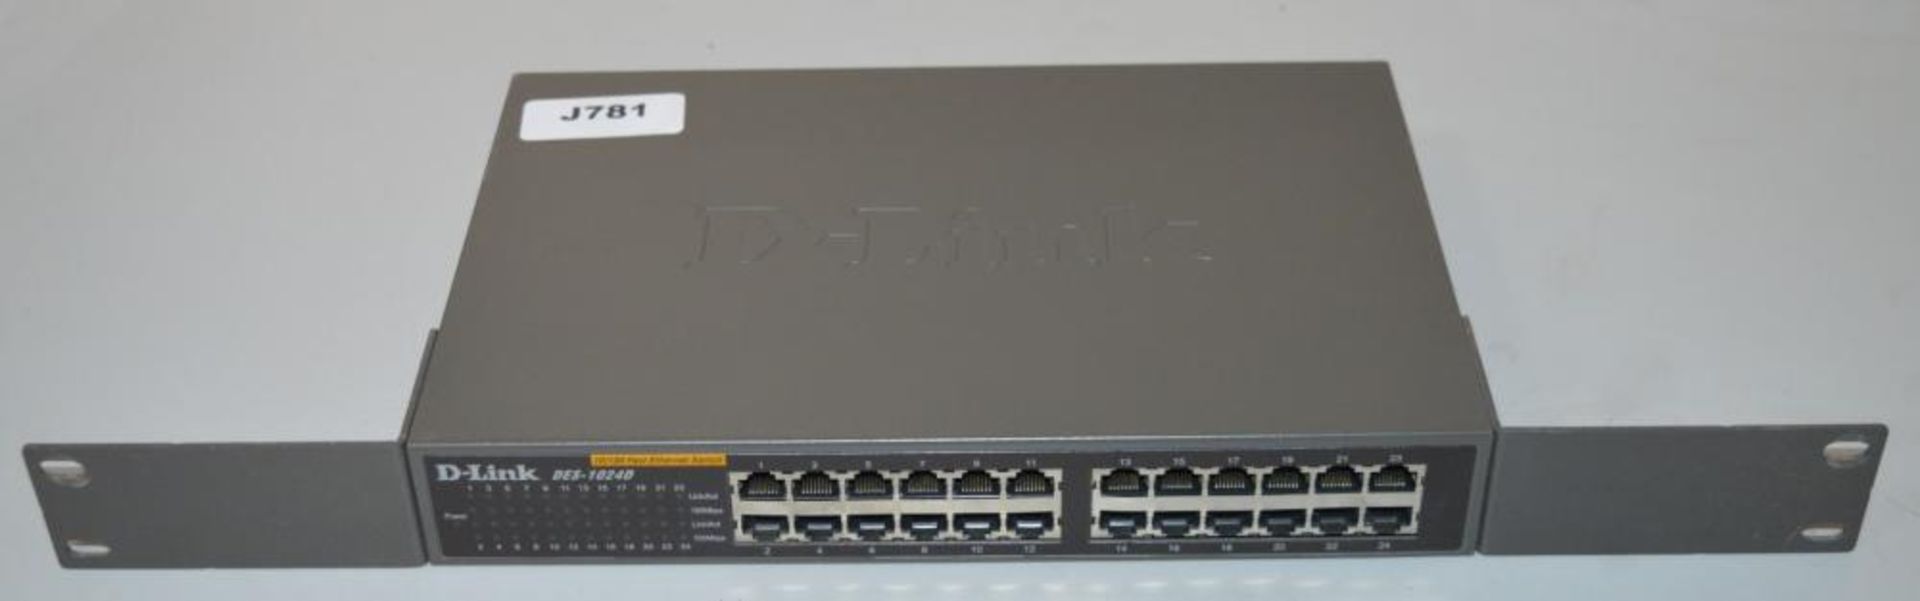 1 x DLink 10/100 24 Port Fast Ethernet Switch - Model DES-1024D - CL249 - Ref J781 - Location: Altri